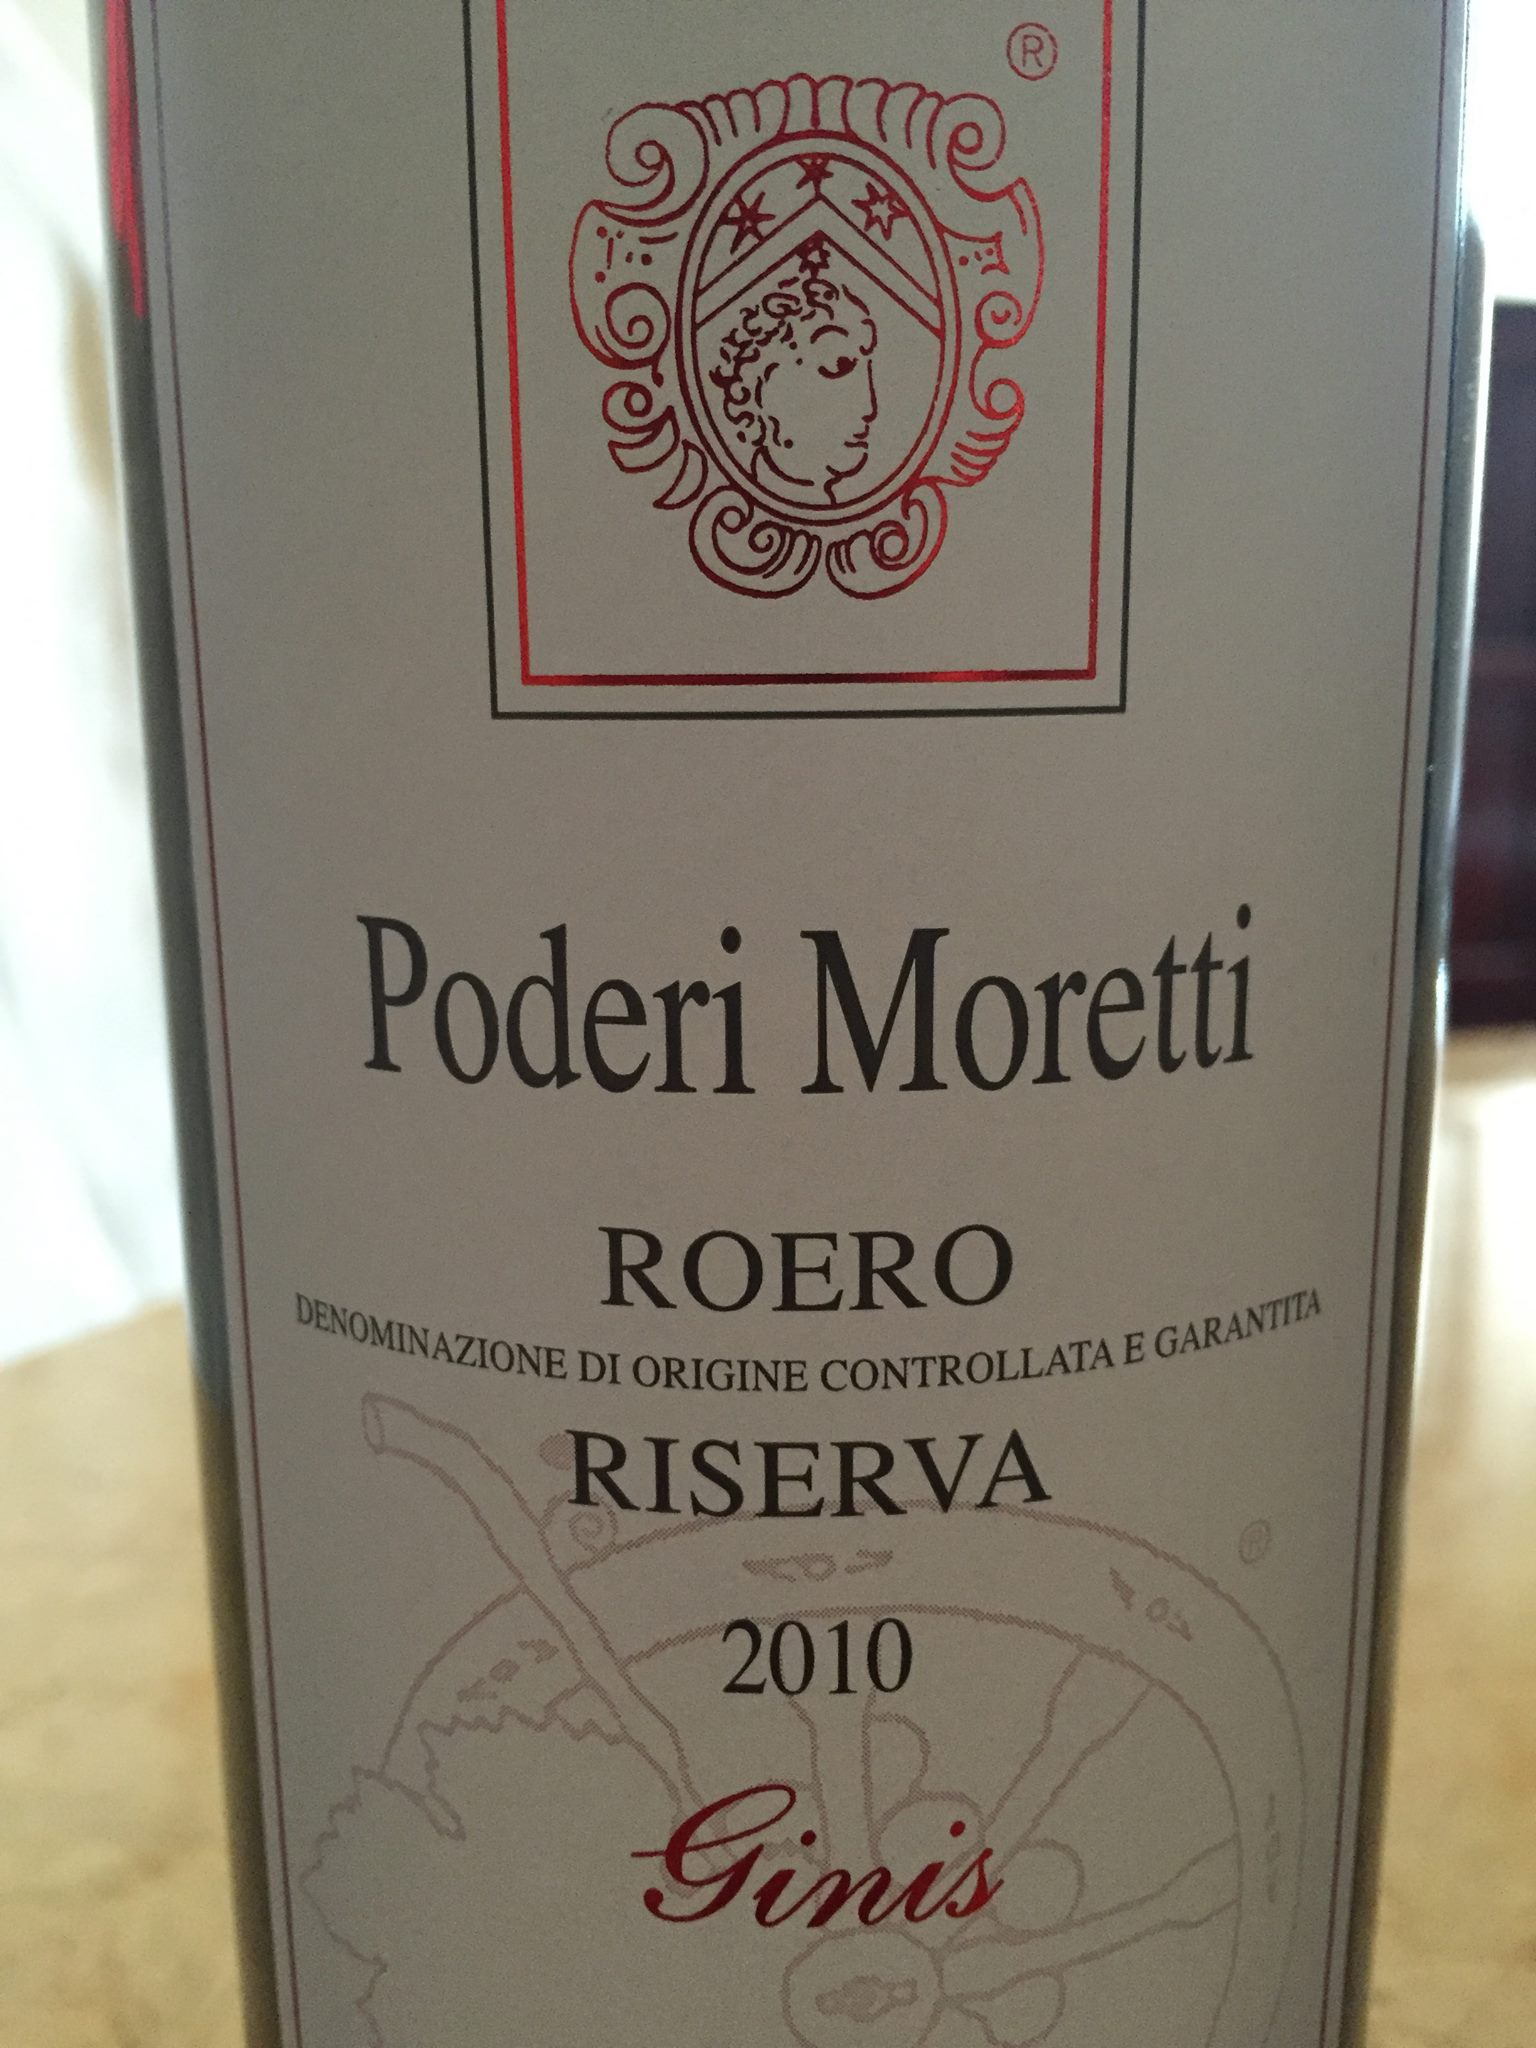 Poderi Moretti – Ginis 2010 – Roero Riserva